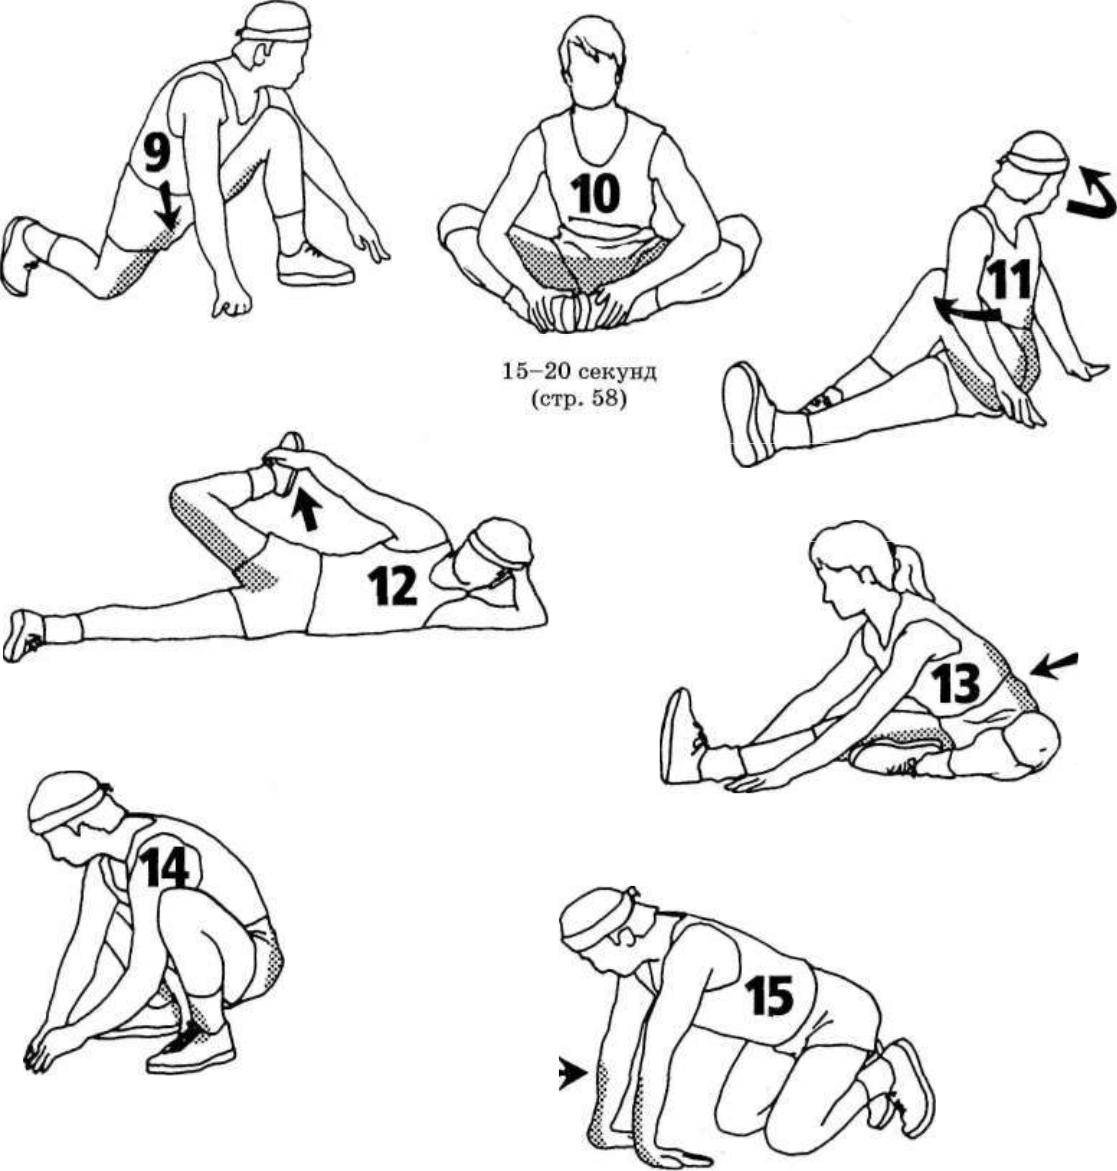 Разминка перед растяжкой: упражнения для разогрева мышц